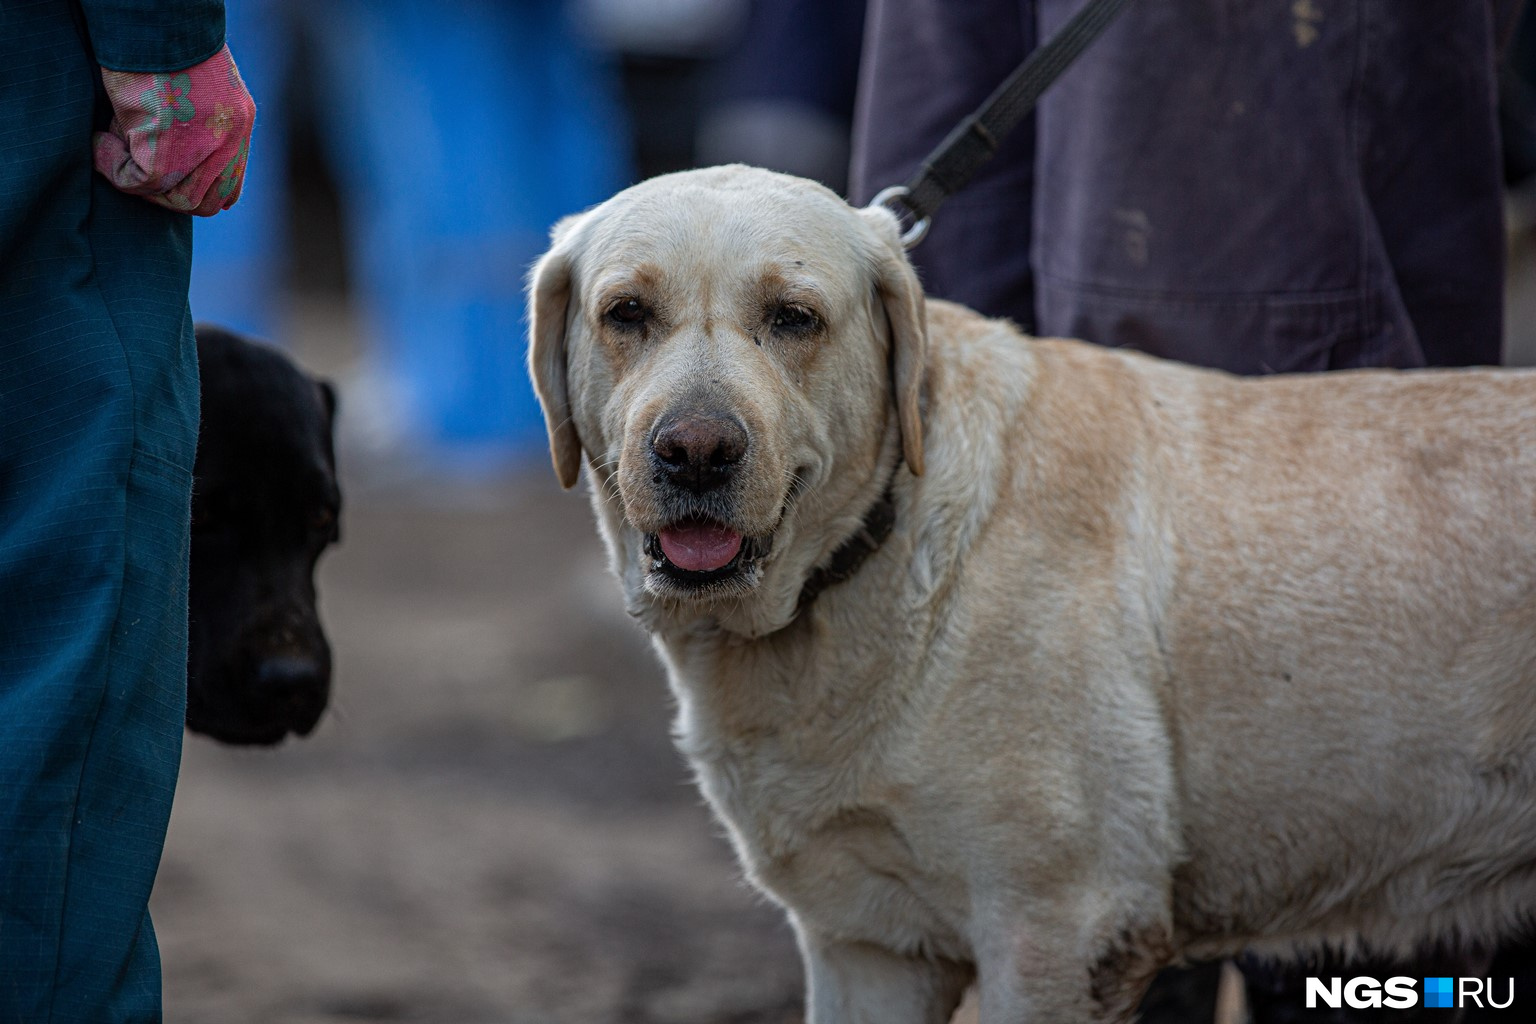 Спасателям помогали специально обученные собаки. Им было сложно работать из-за огромного количества людей и, соответственно, запахов